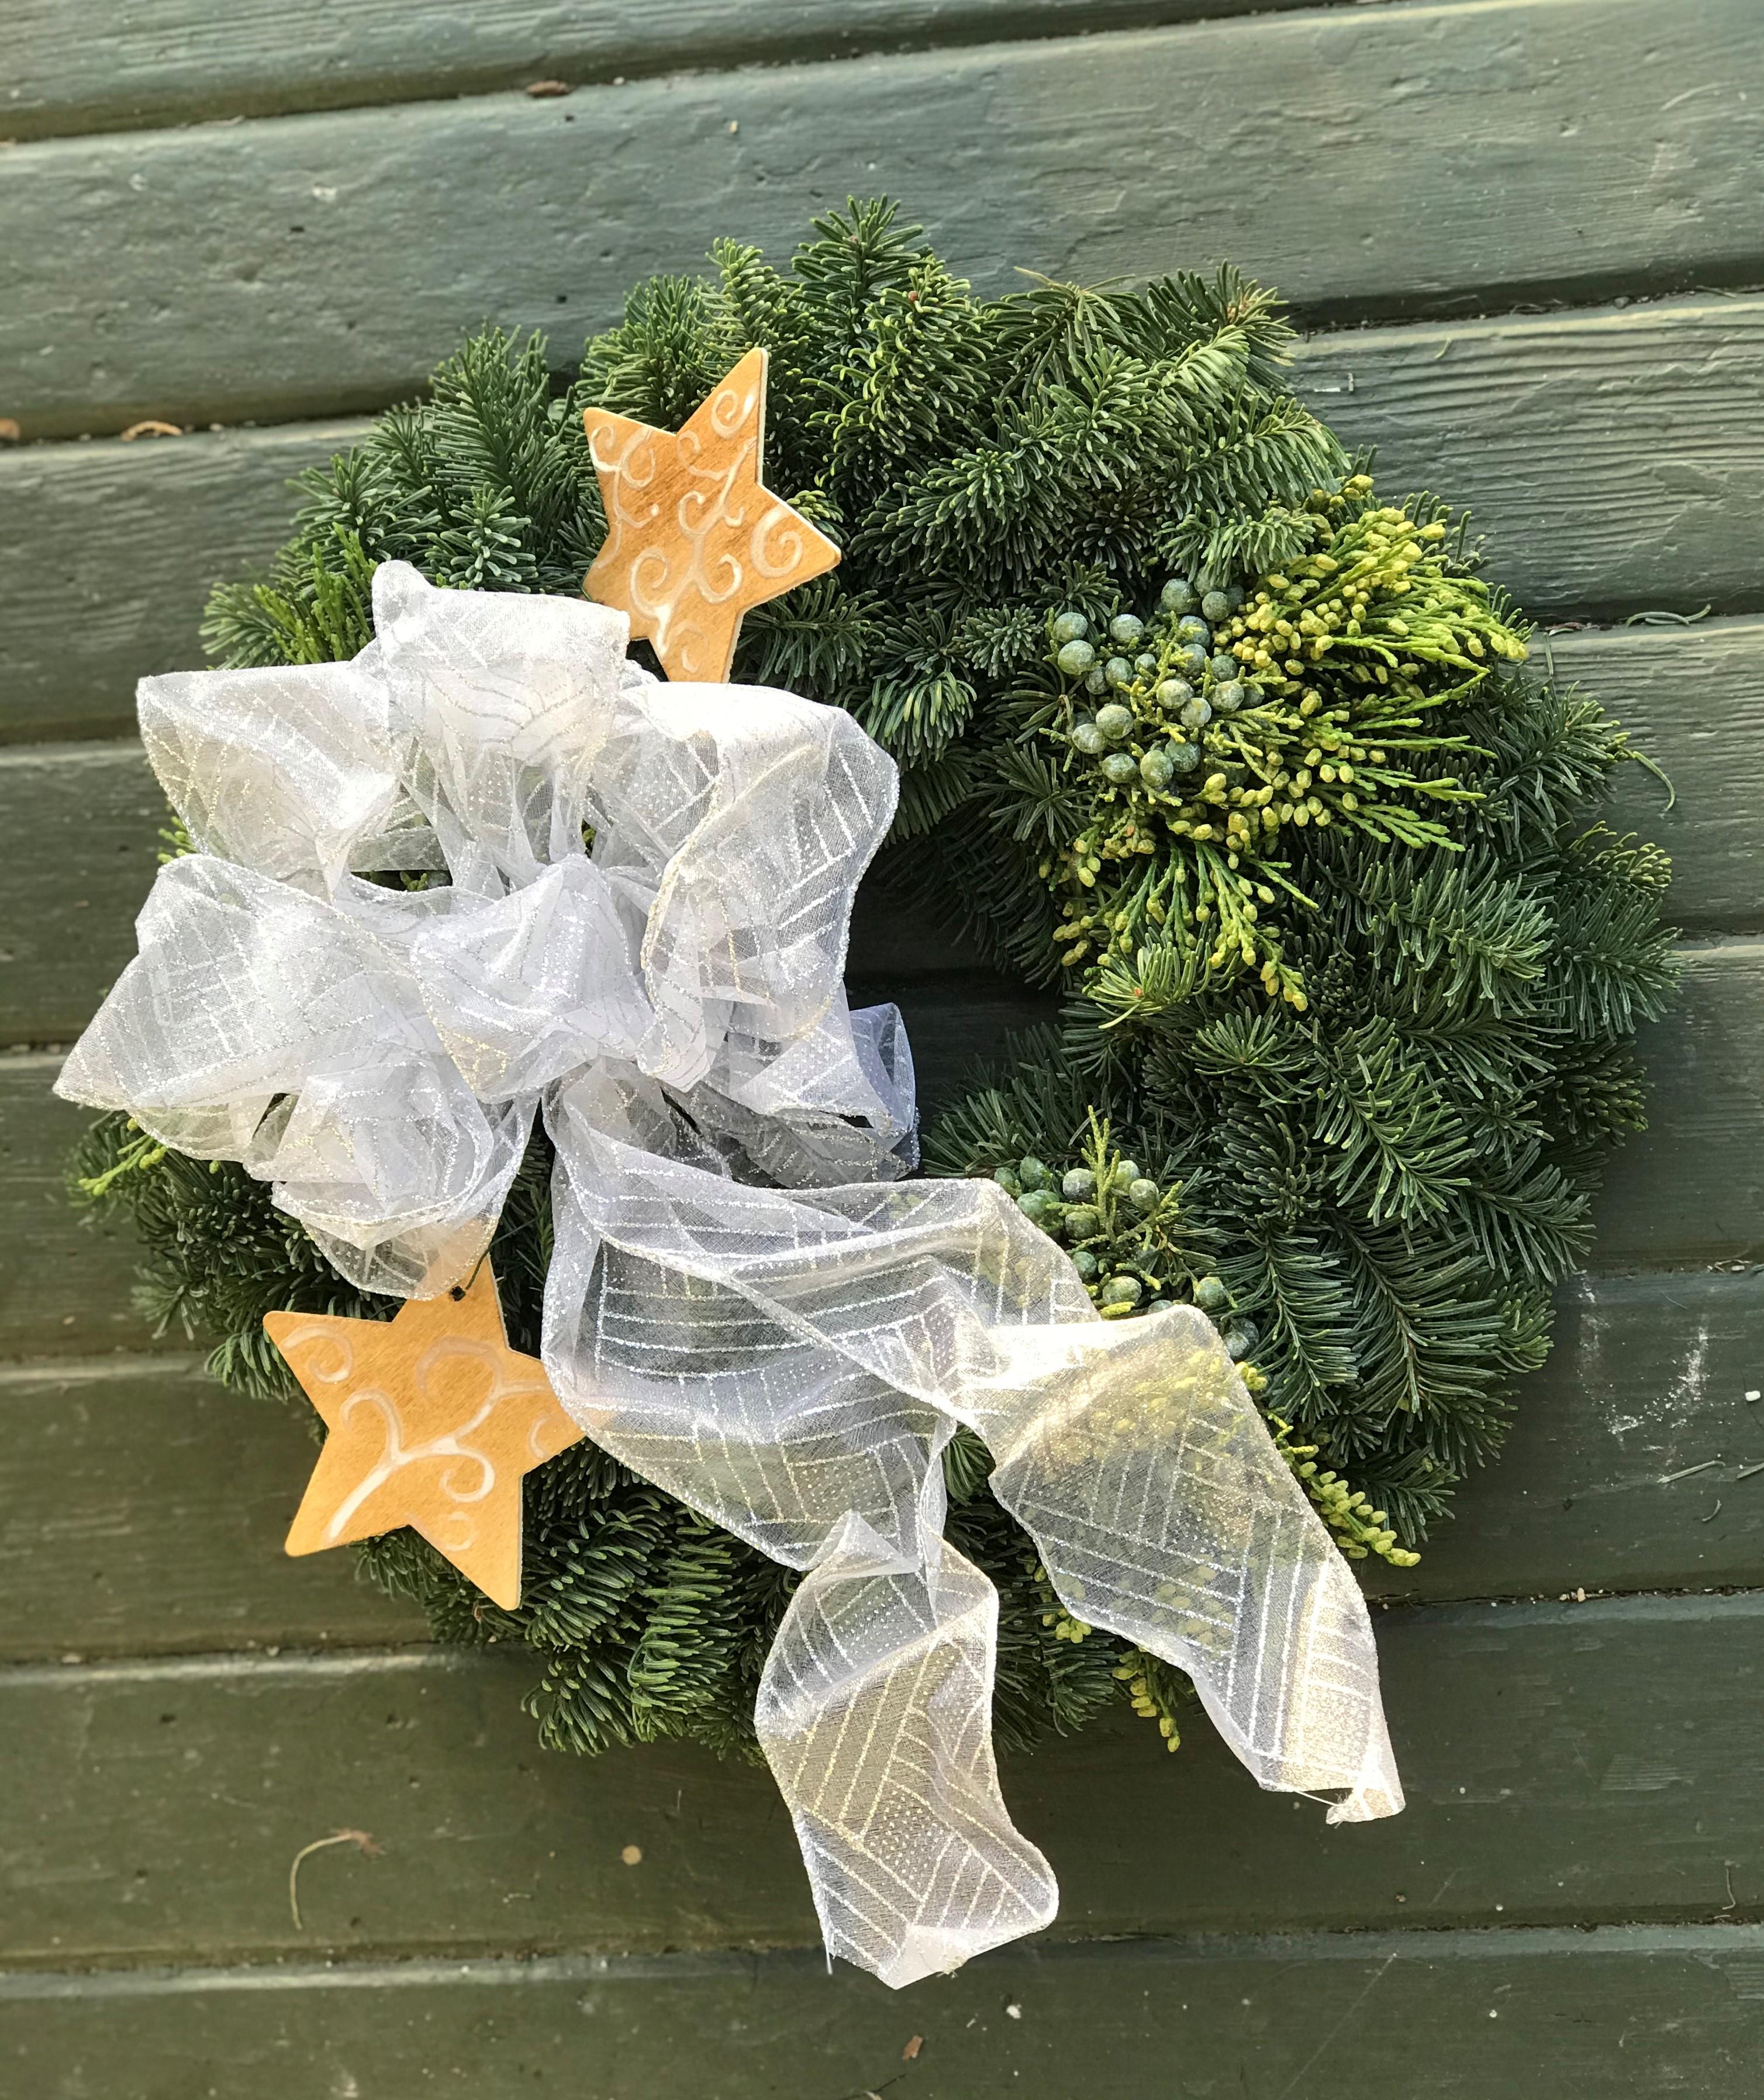 Sample Christmas wreath image